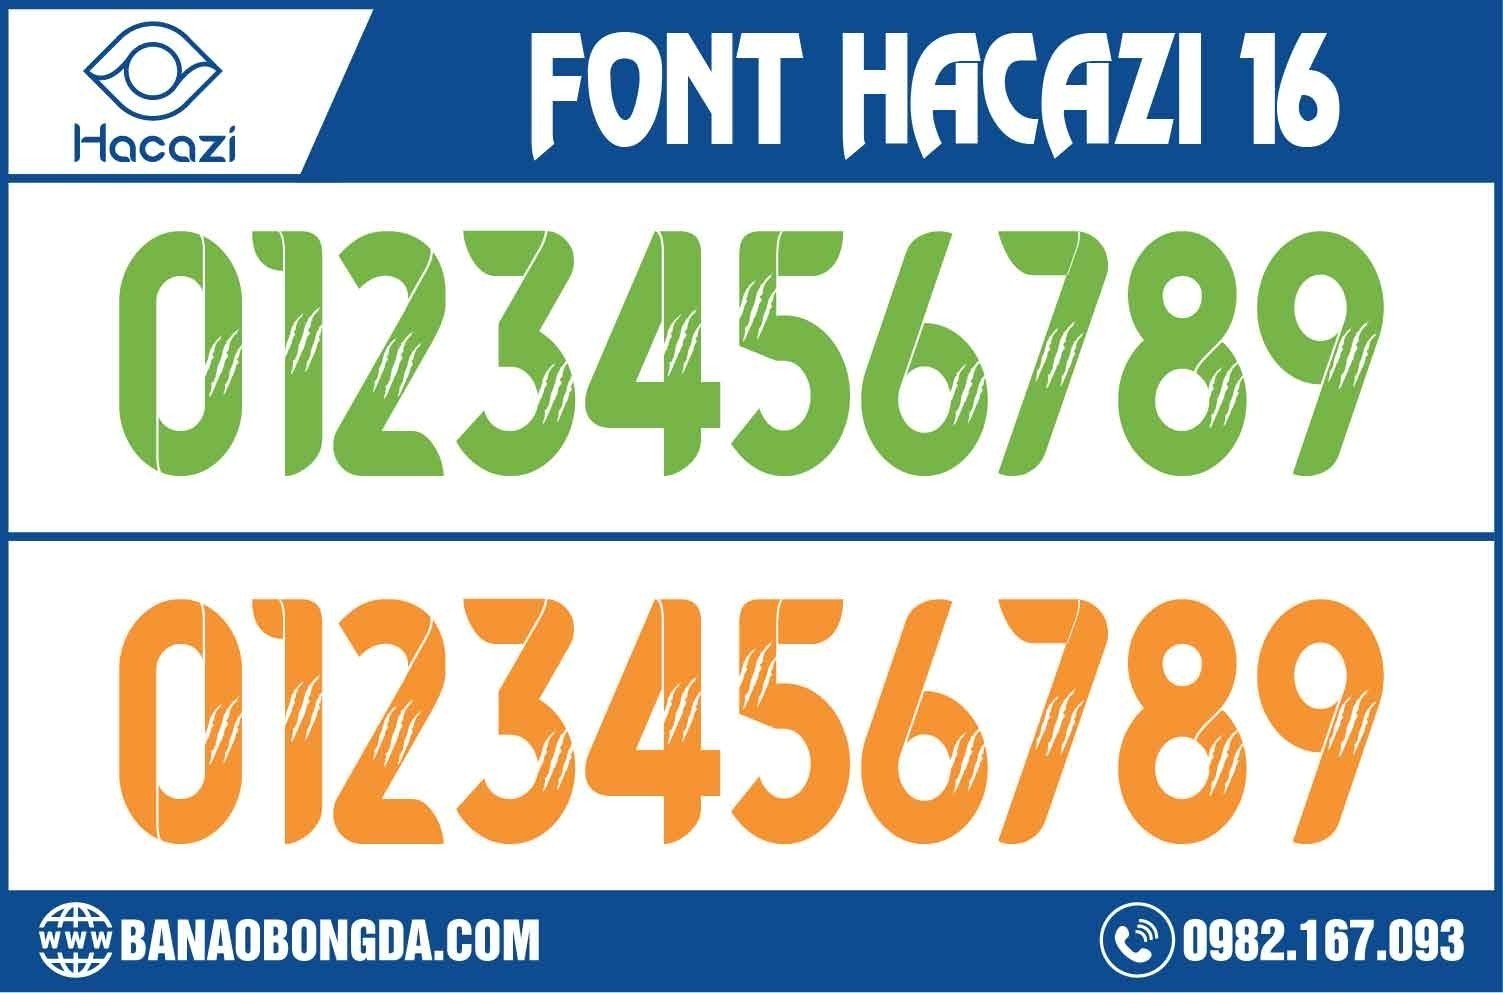  Bạn đã sẵn sàng truy tìm và sở hữu ngay bộ font số áo bóng đá 16 độc quyền nhất chỉ có tại Shop Hacazi Sport này chưa? Đặc biệt đây chính là thiết kế phù hợp với những ai yêu thích sự đơn giản nhưng không hề đơn điệu nhé! 